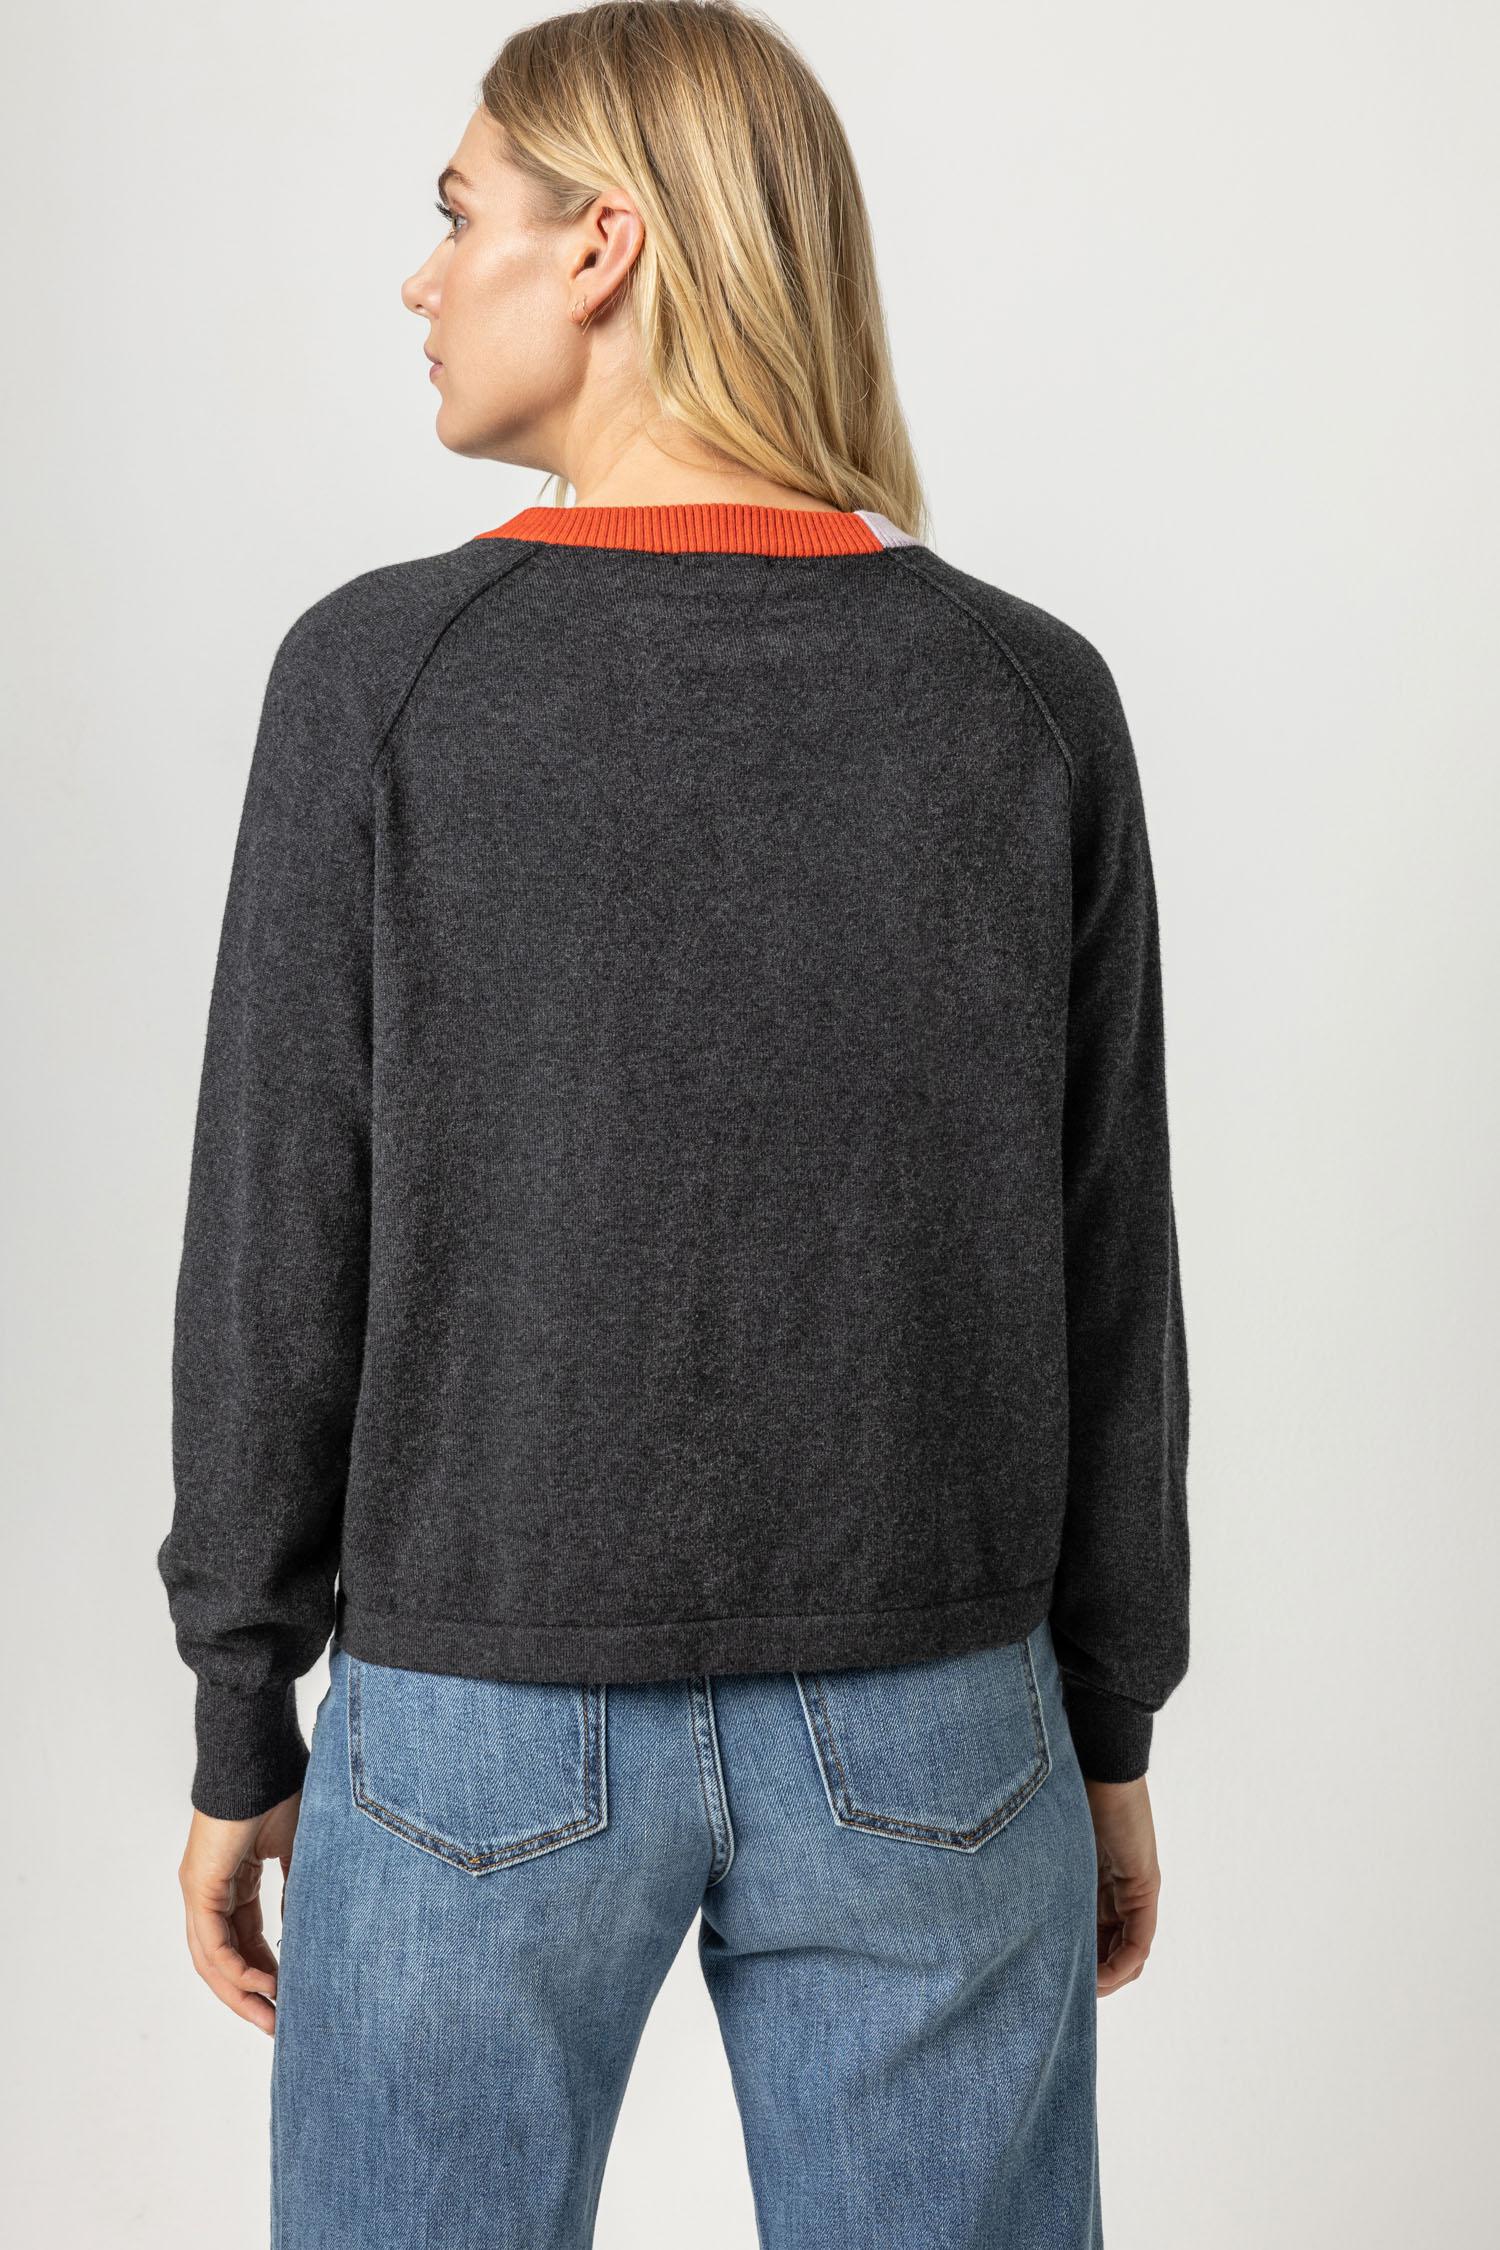 Colorblock Raglan Sweater in Charcoal